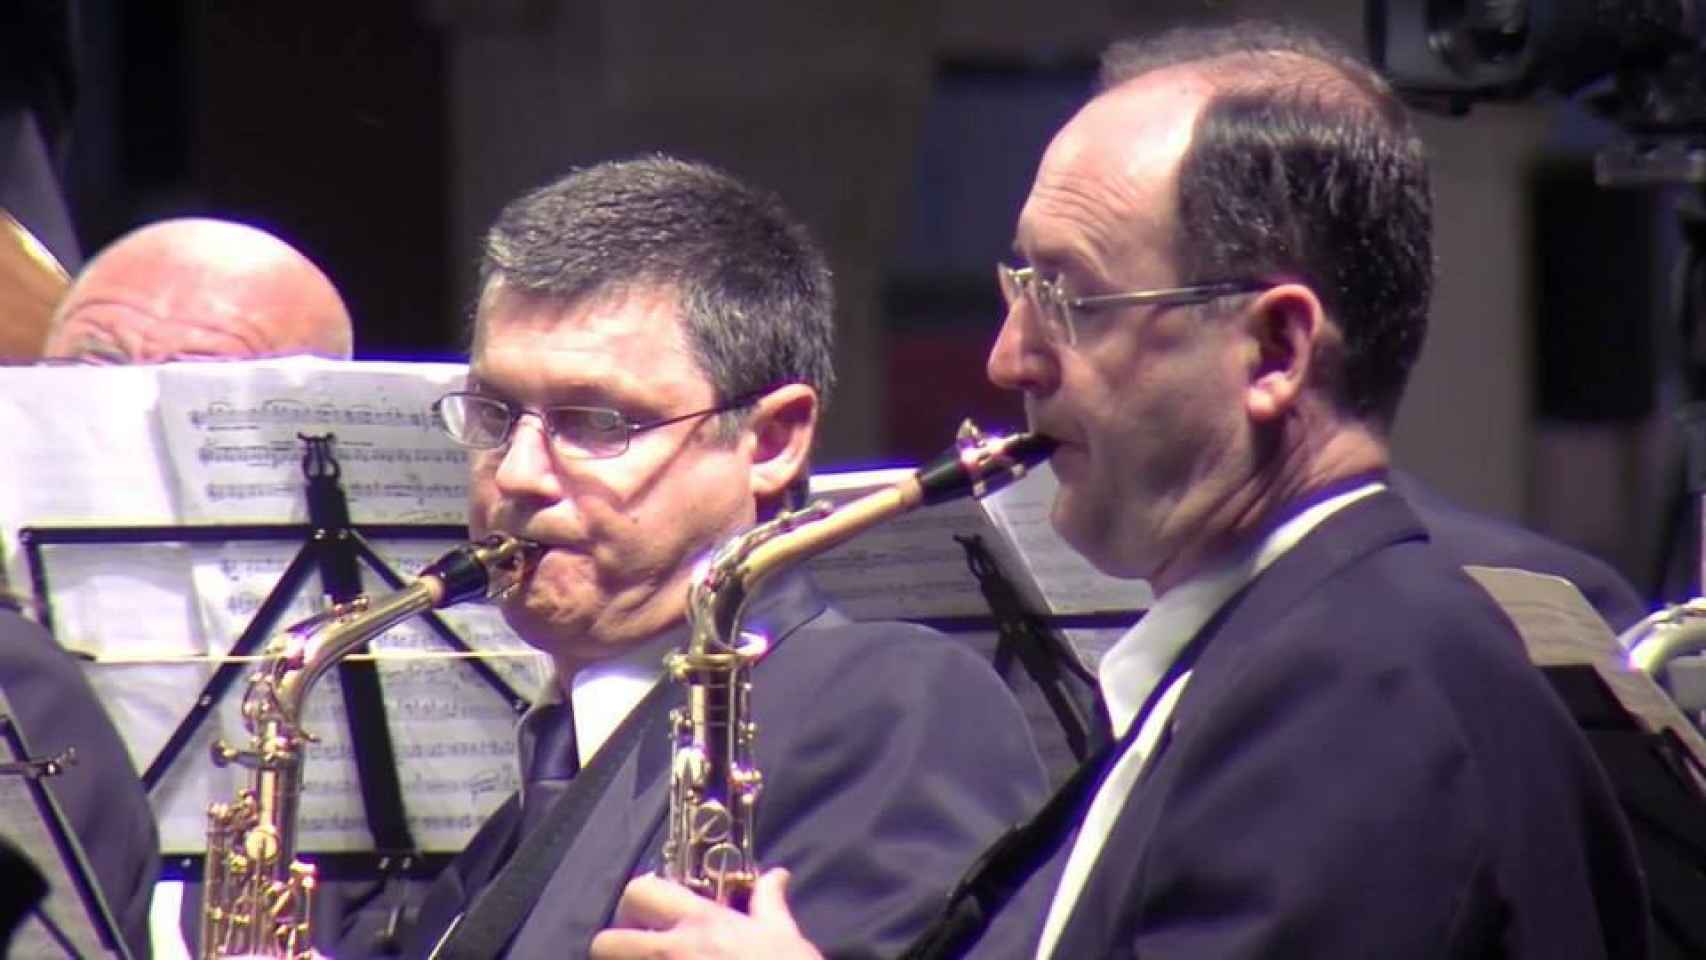 A la derecha, César tocando el saxofón en su grupo musical 'El Trabajo' en Jijona.